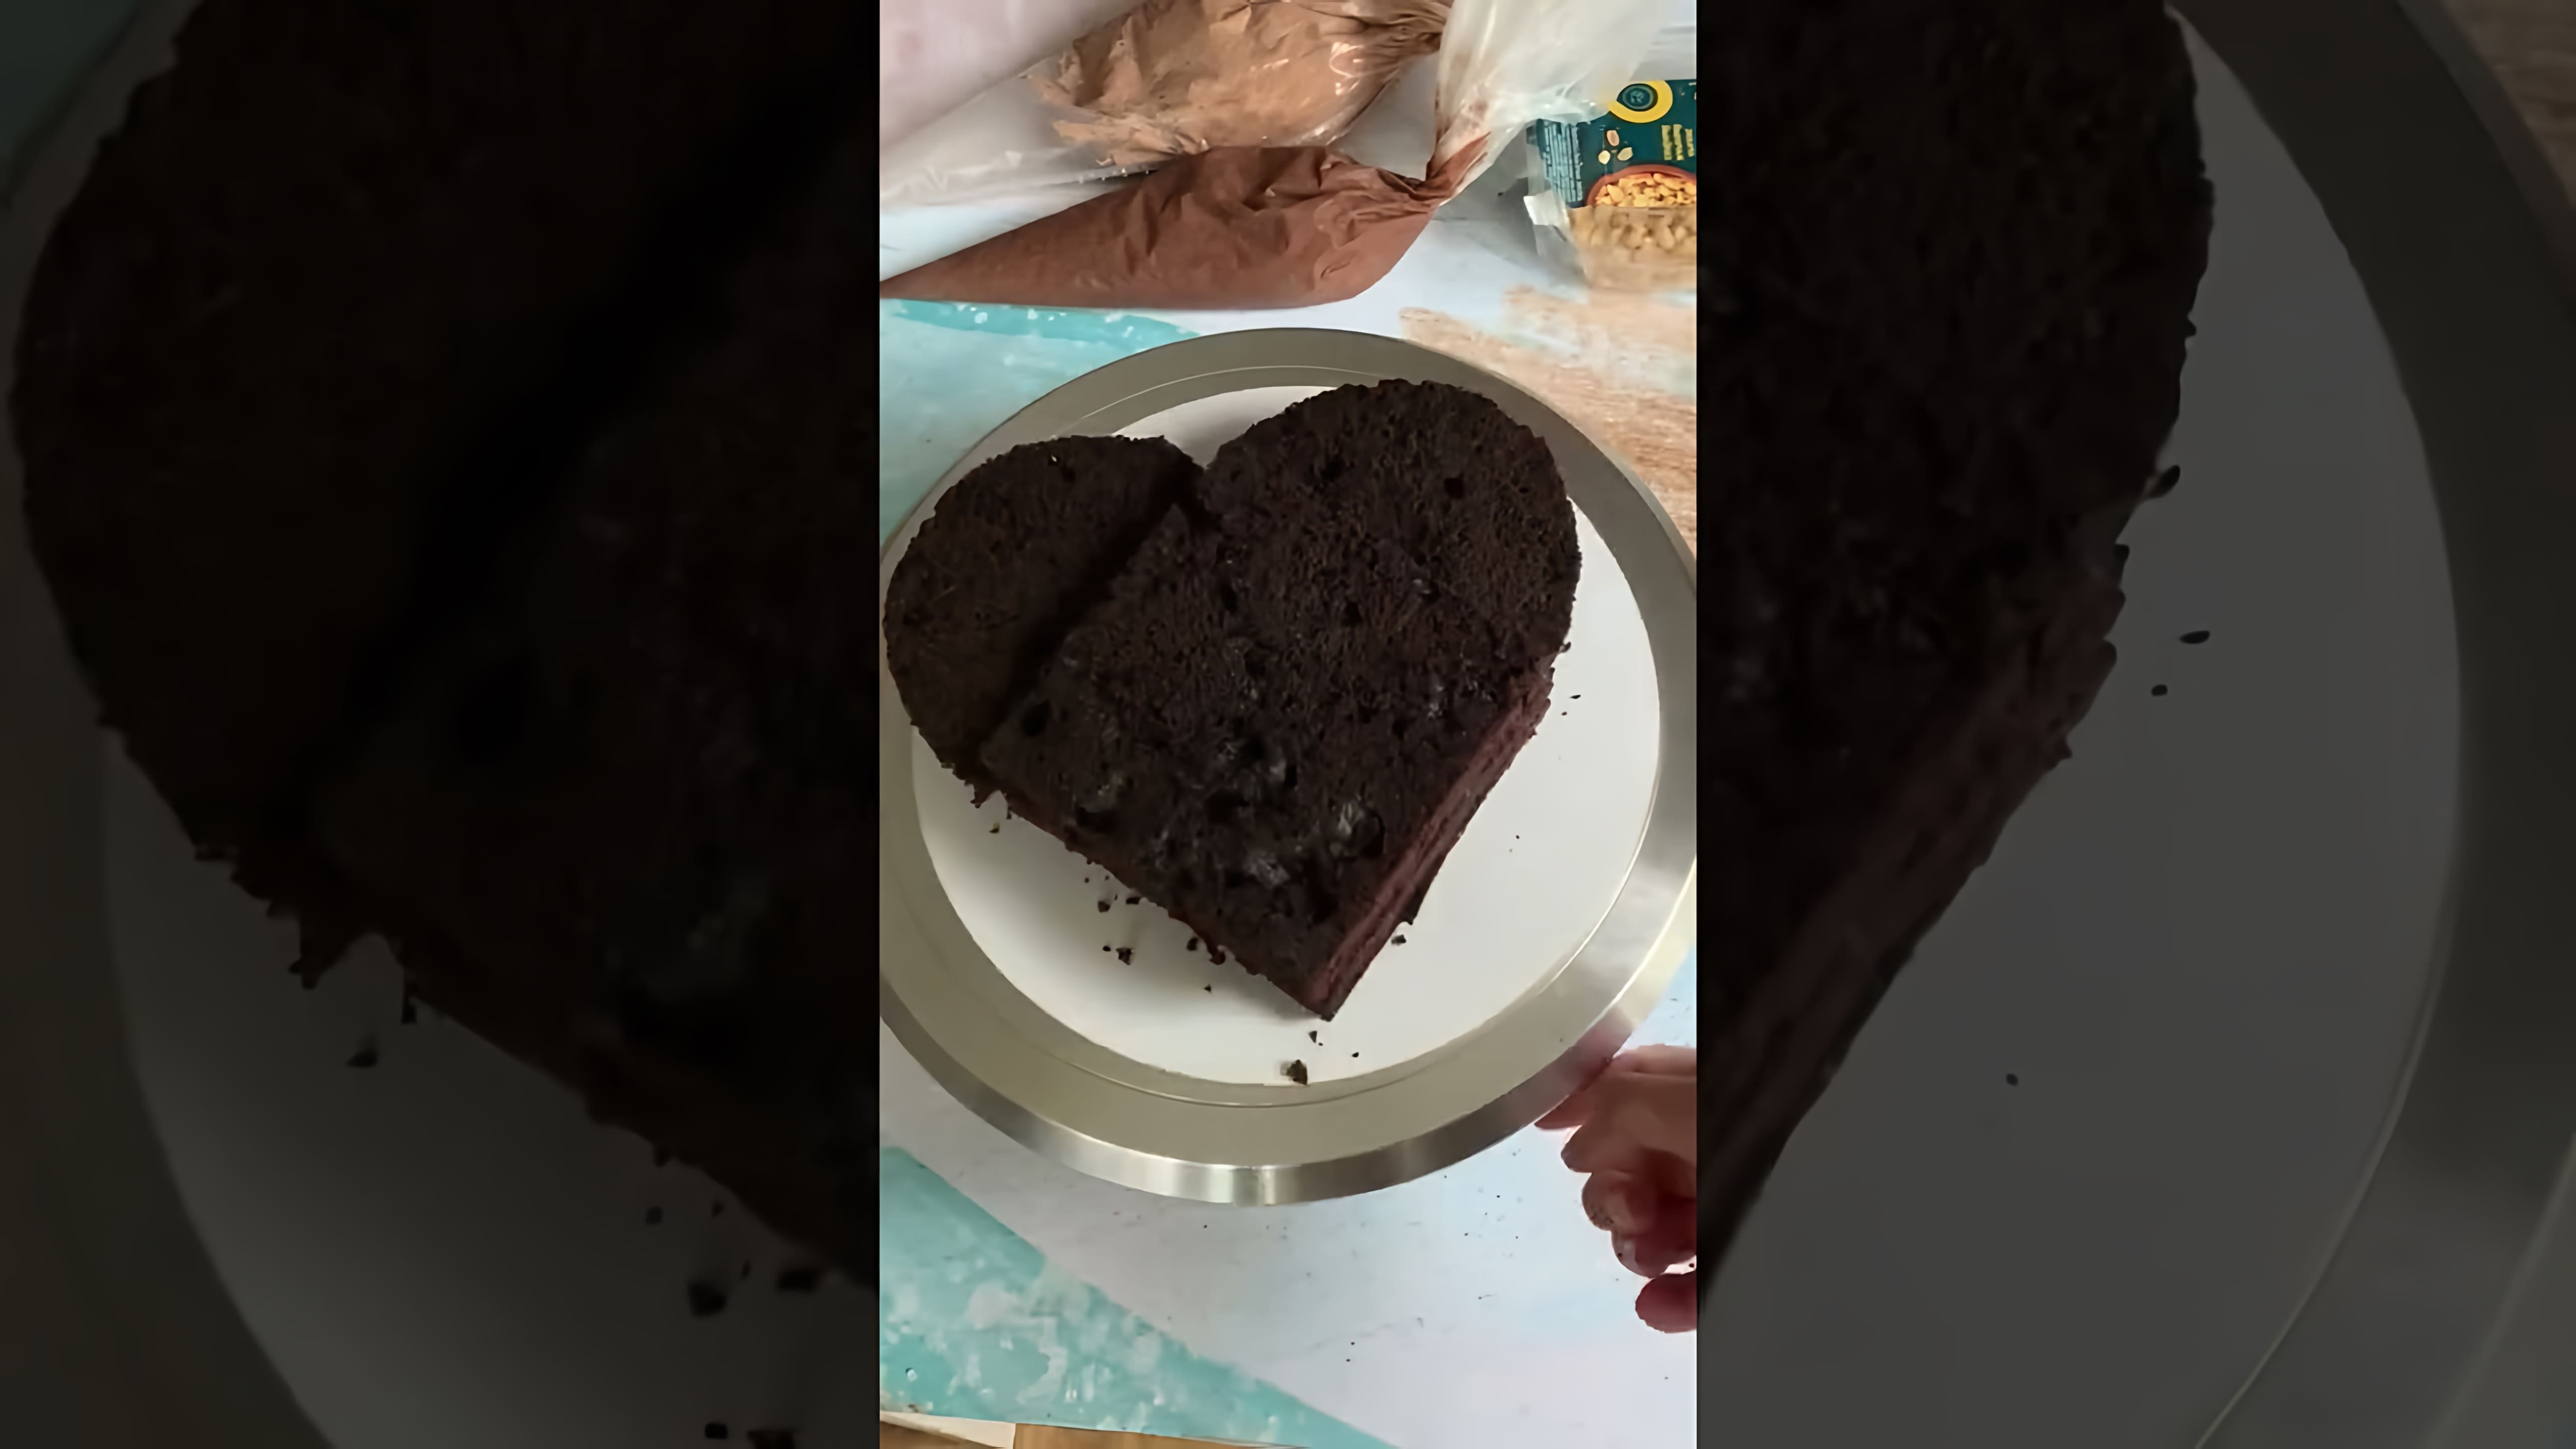 Видео: Торт-сердце без формы ❤️ #14февраля #торт #кондитер #рецепт #лайфхак